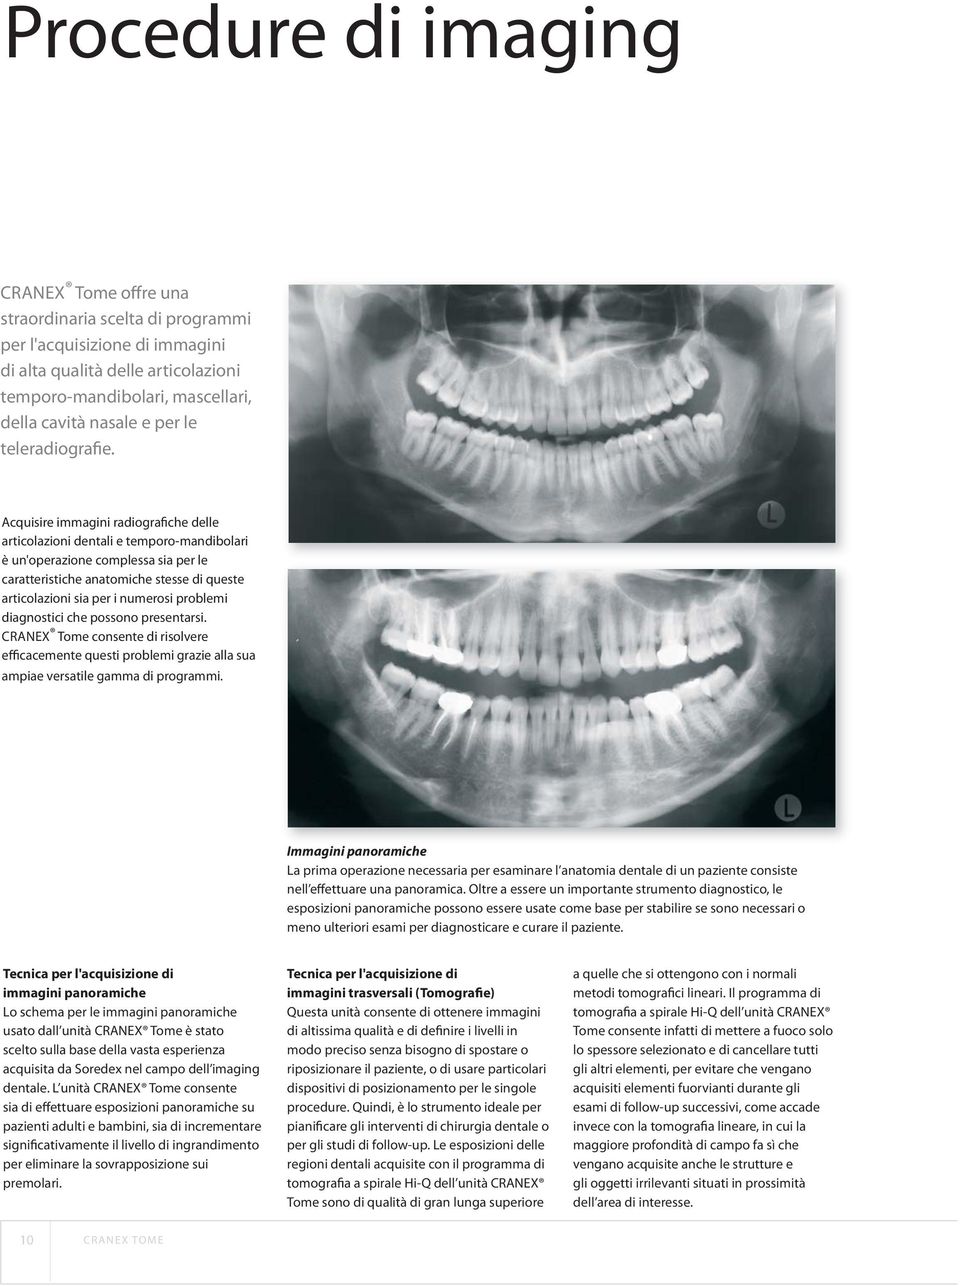 Acquisire immagini radiografiche delle articolazioni dentali e temporo-mandibolari è un'operazione complessa sia per le caratteristiche anatomiche stesse di queste articolazioni sia per i numerosi